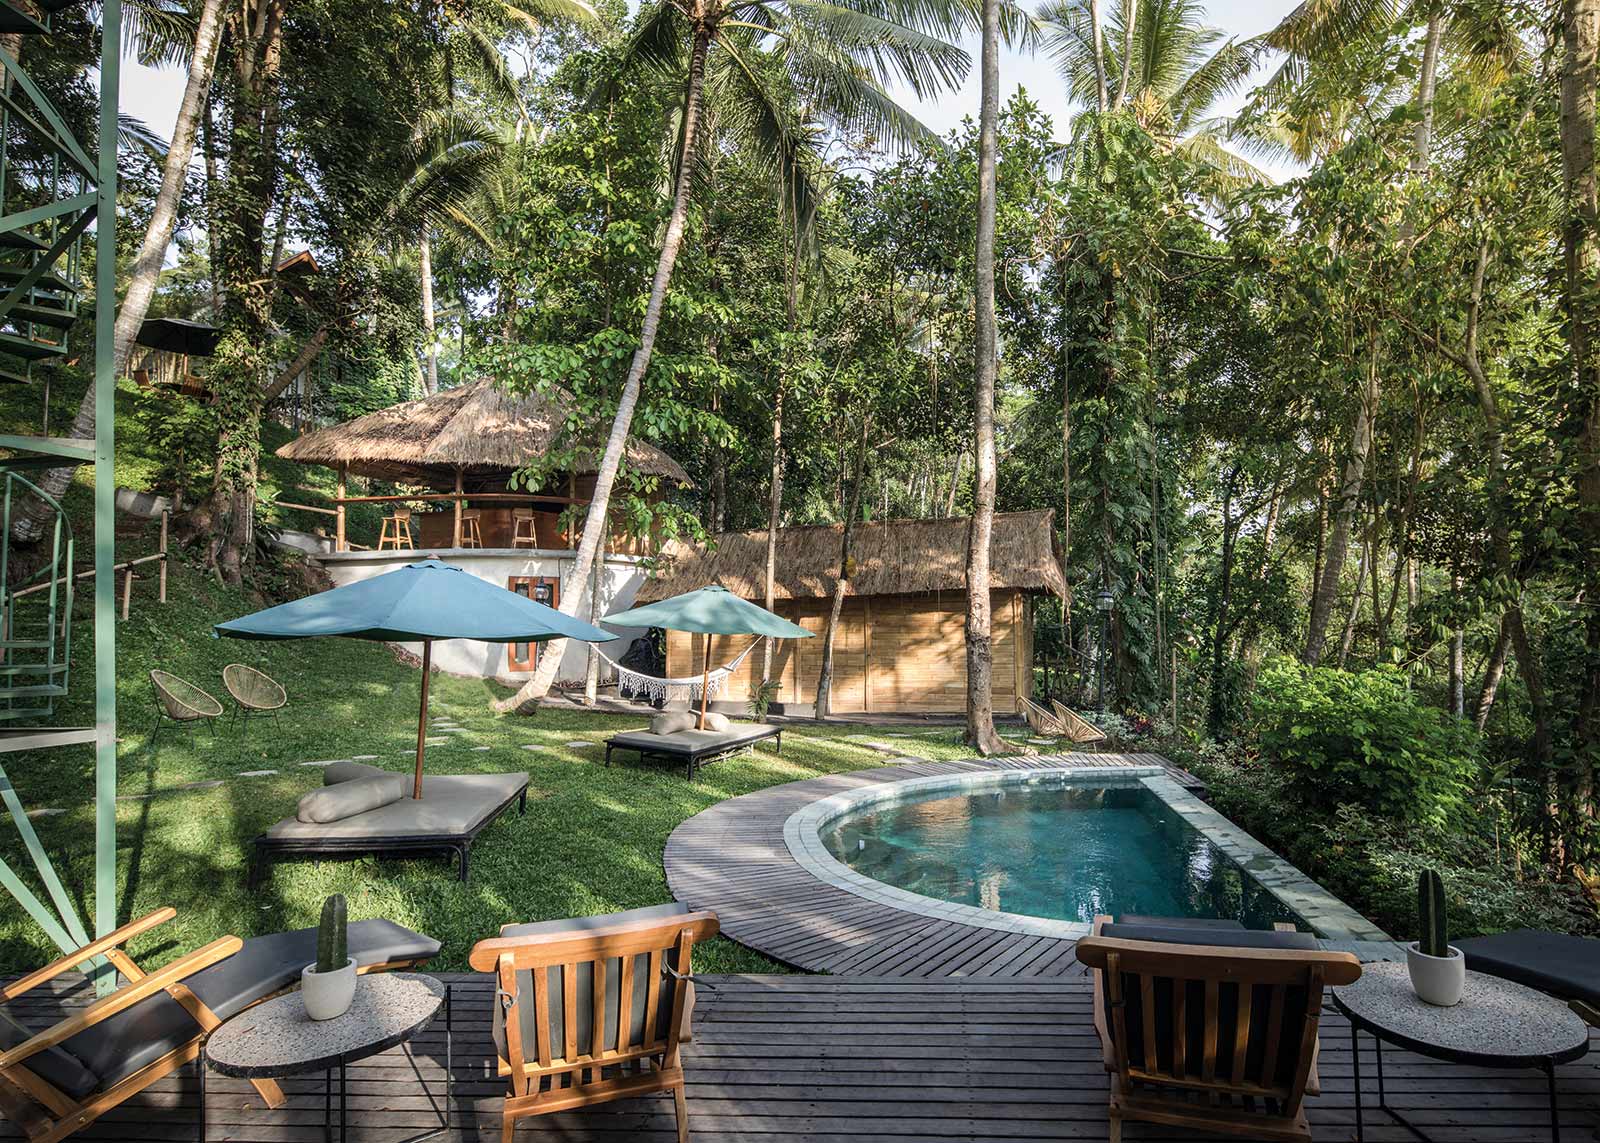 Lift-Bali-Penestanan-alexis-Dornier-nature-Tarzan-jungle-pool